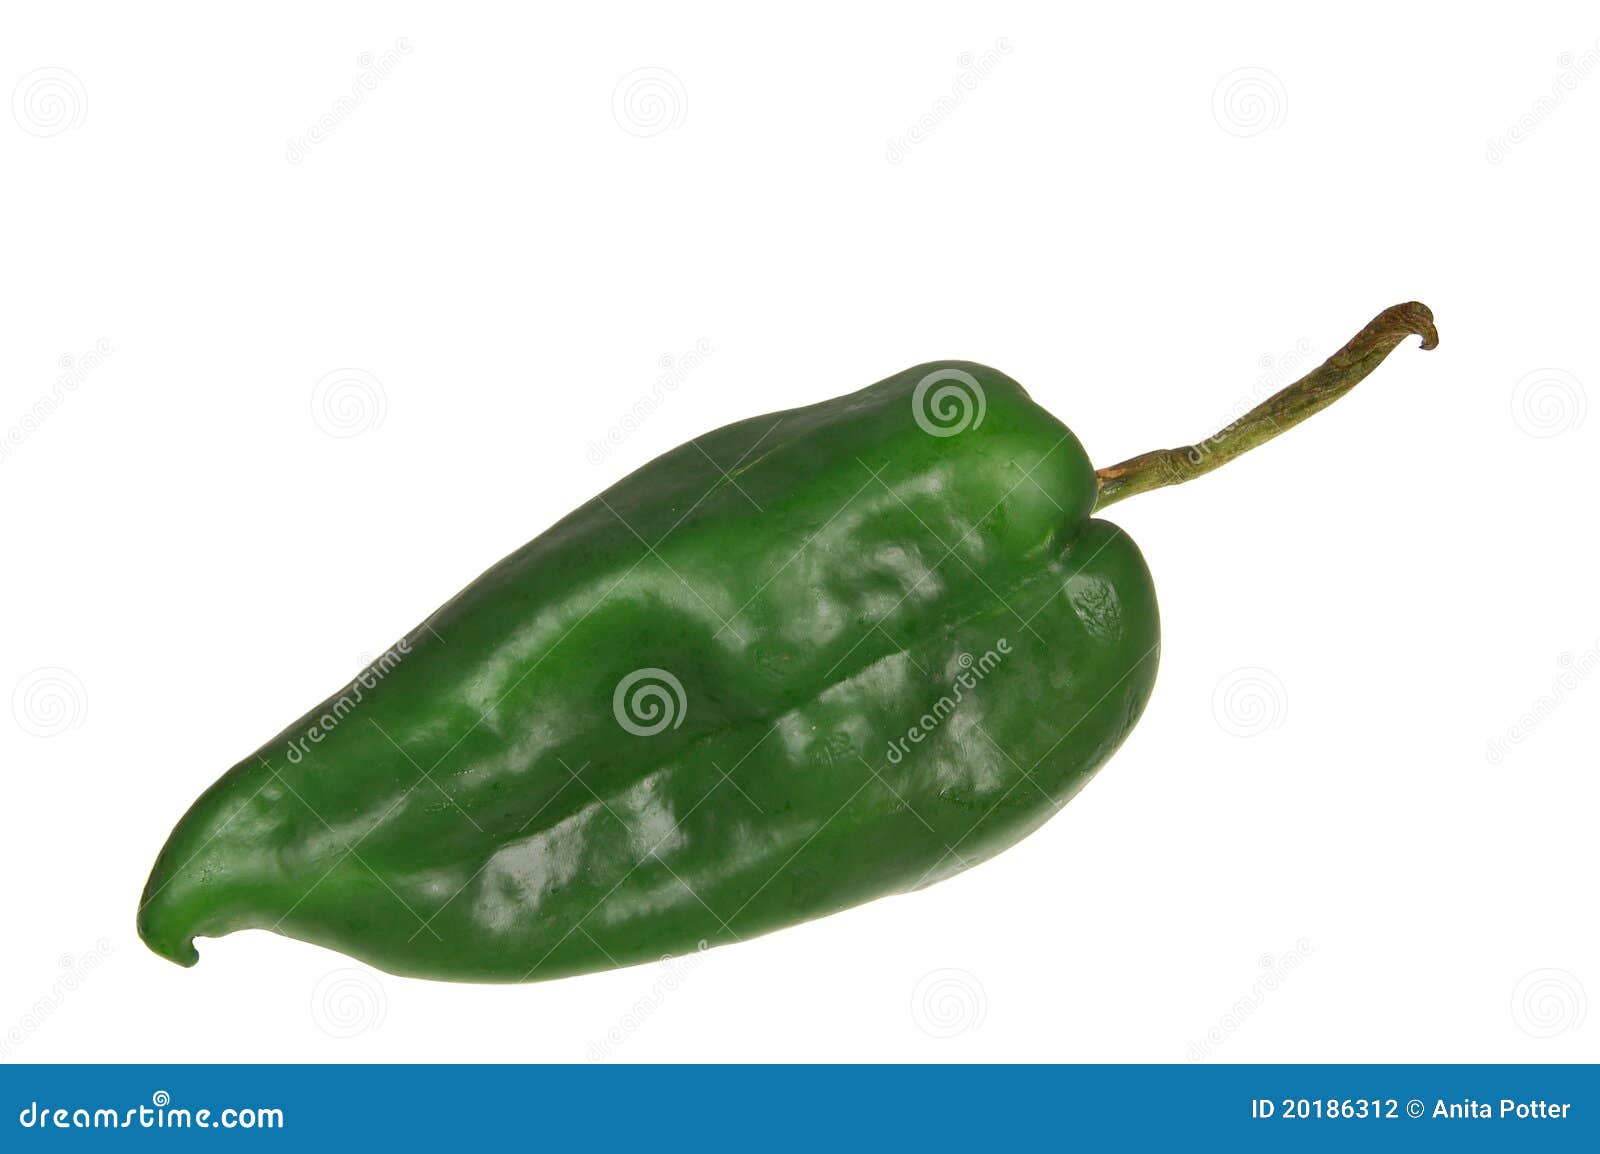 green poblano chili